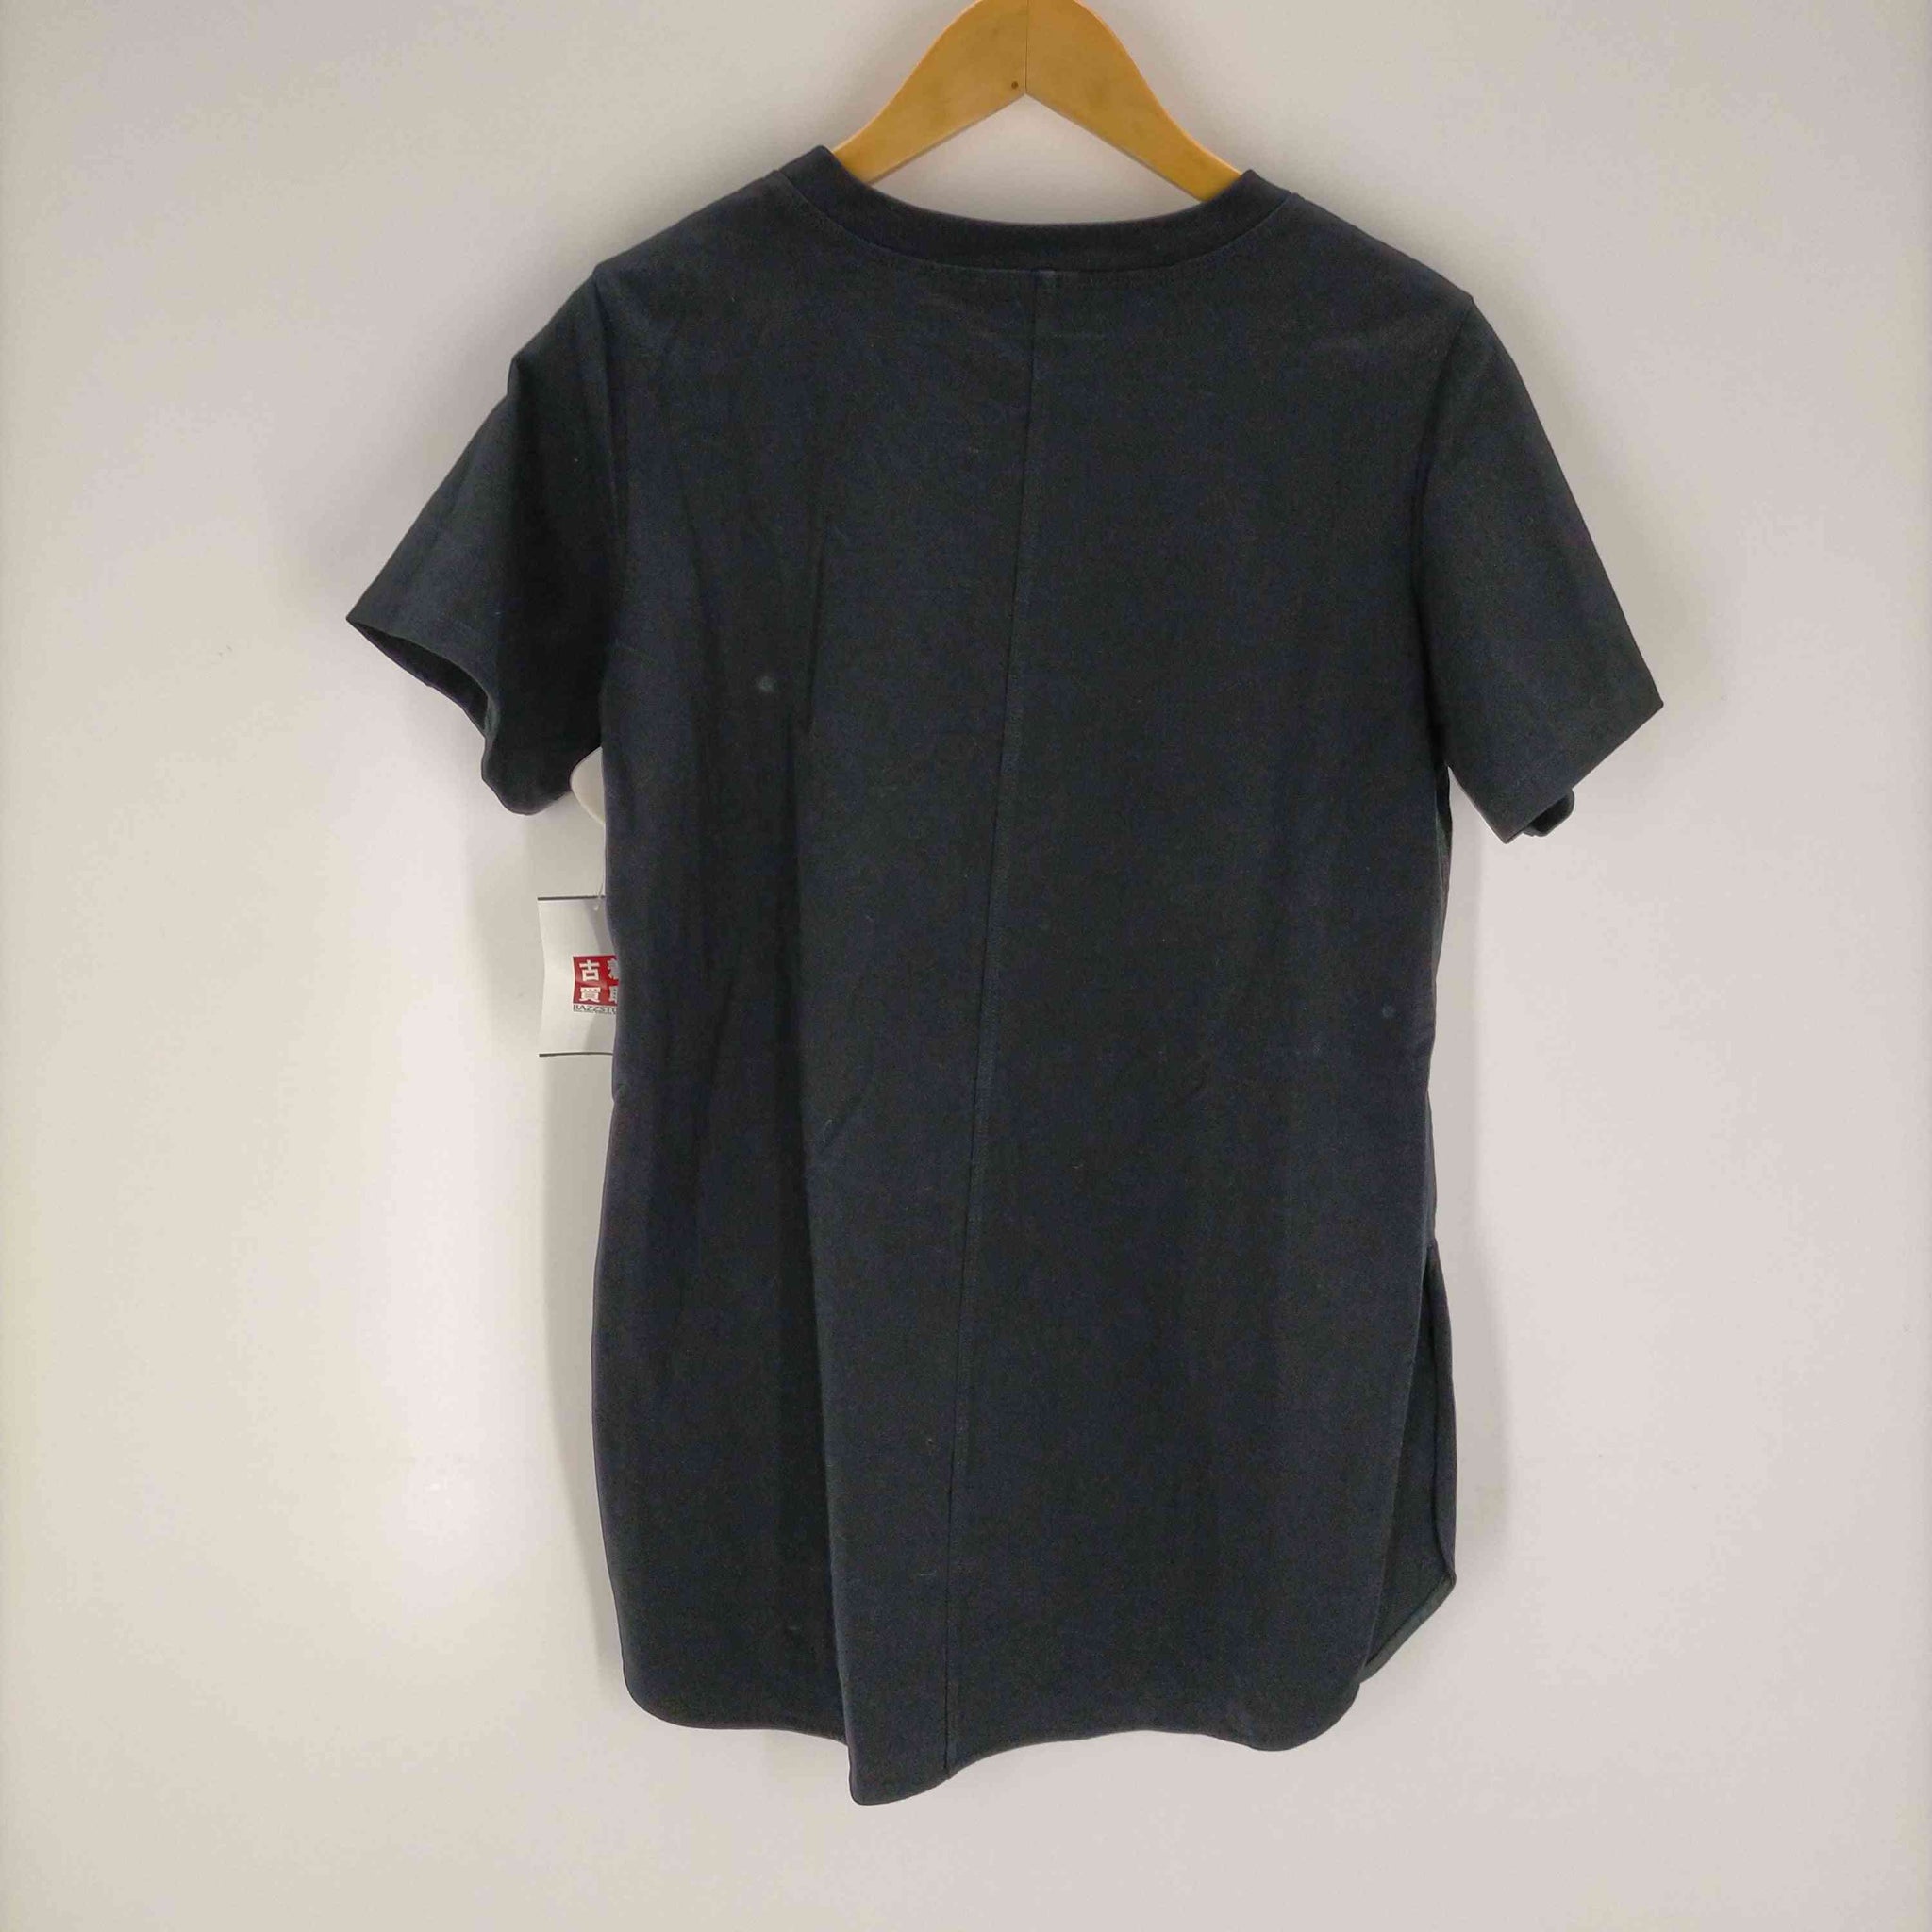 BLENHEIM(ブレンハイム)オーバーサイズスリットTシャツ